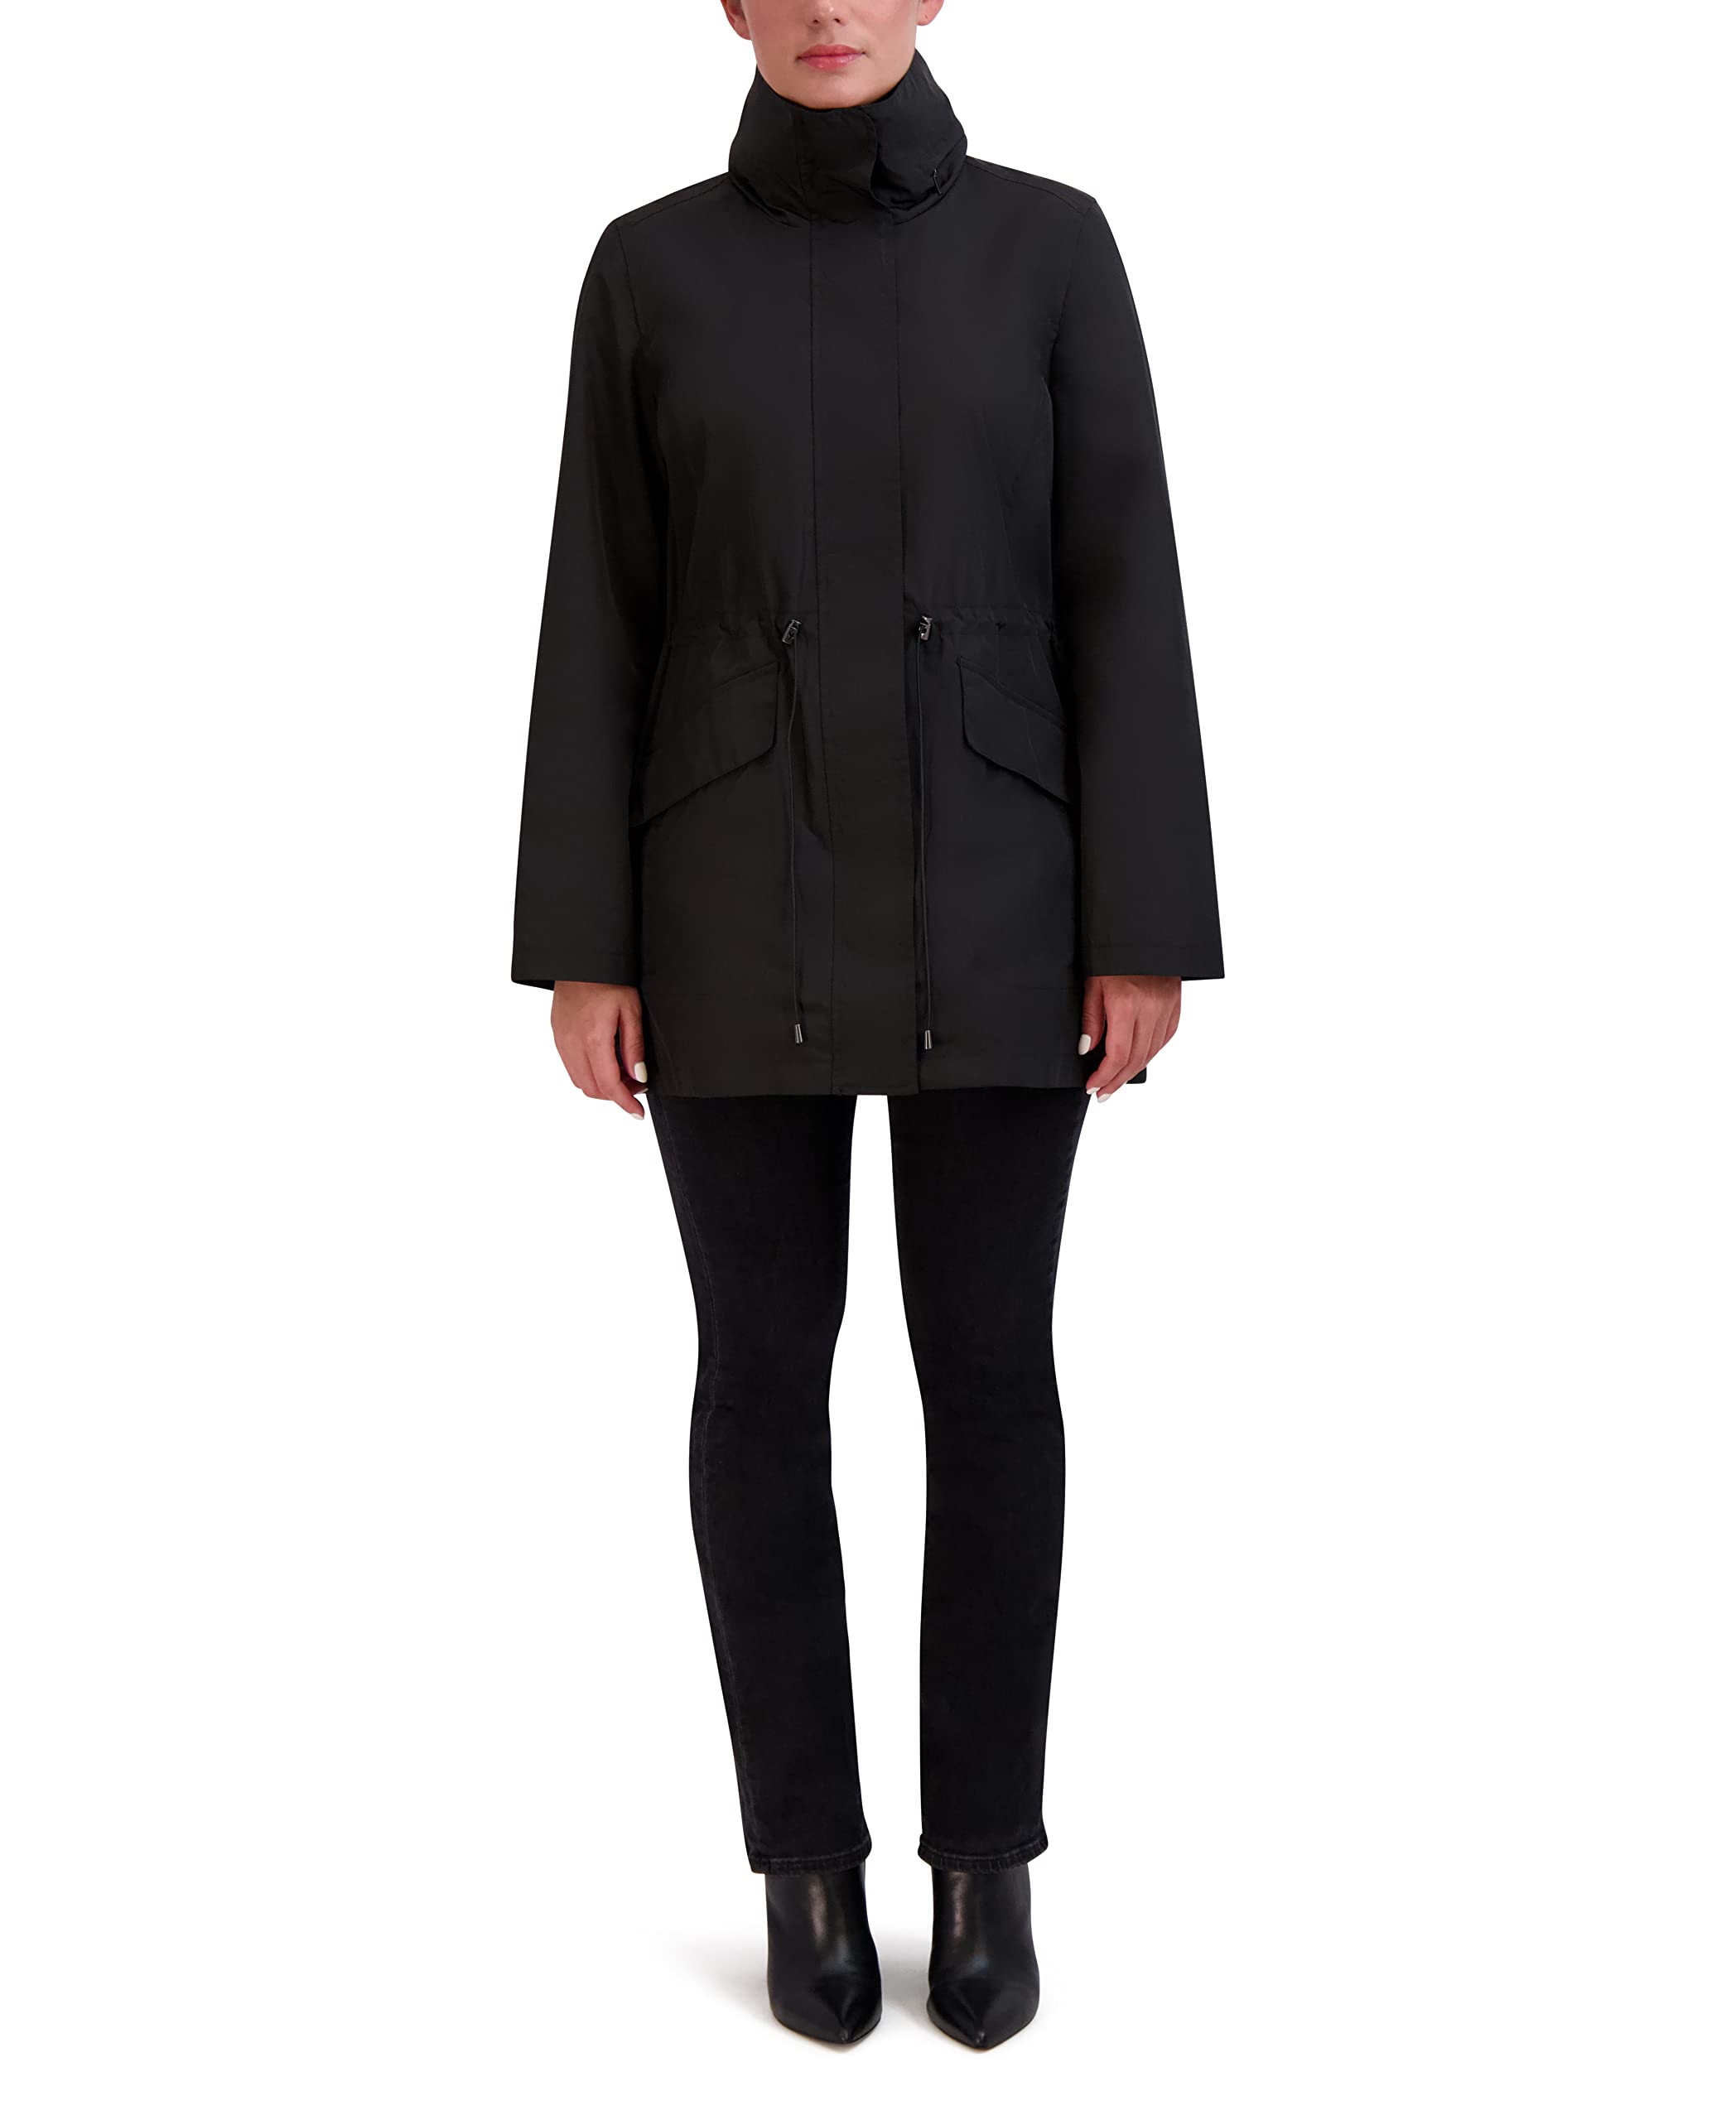 Cole Haan Women's Adjustable Unlined Packable Coat